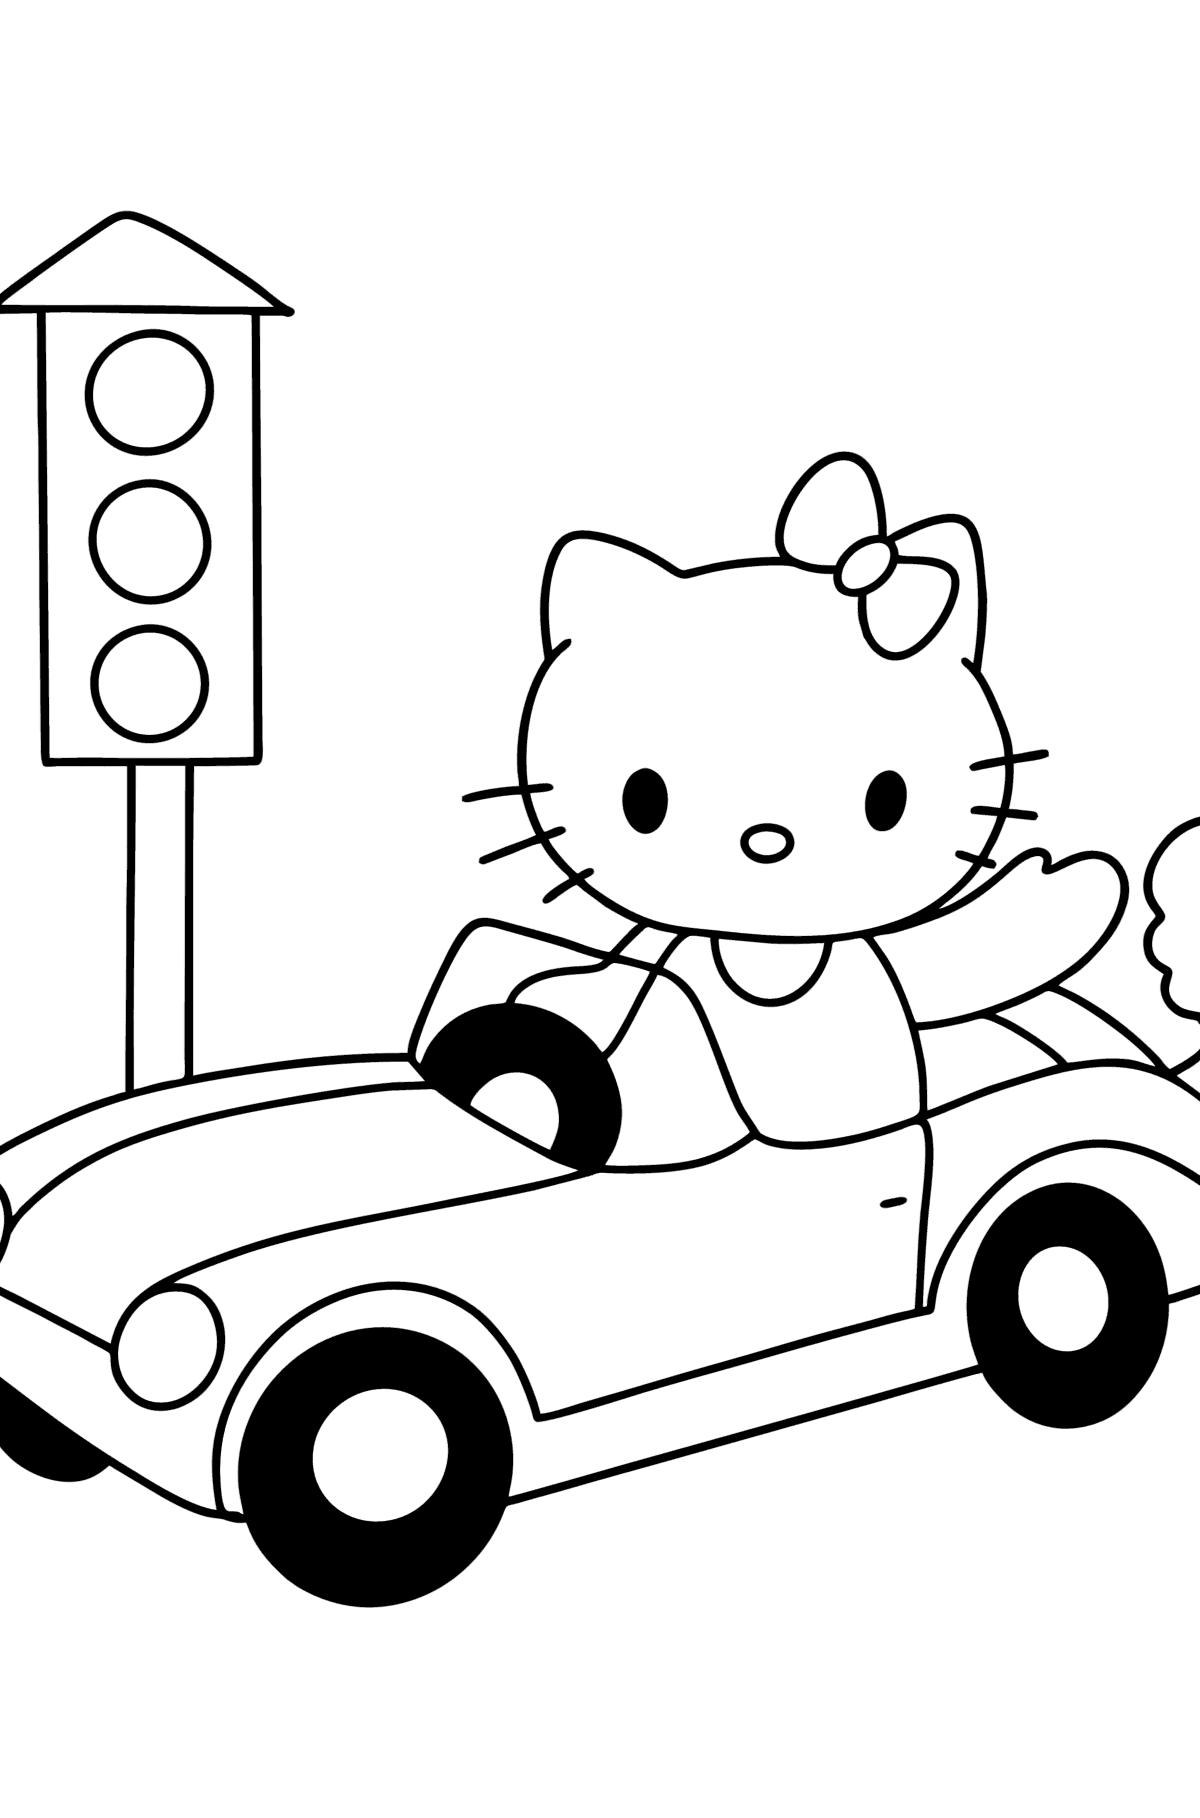 Ausmalbild Hello Kitty mit dem Auto - Malvorlagen für Kinder